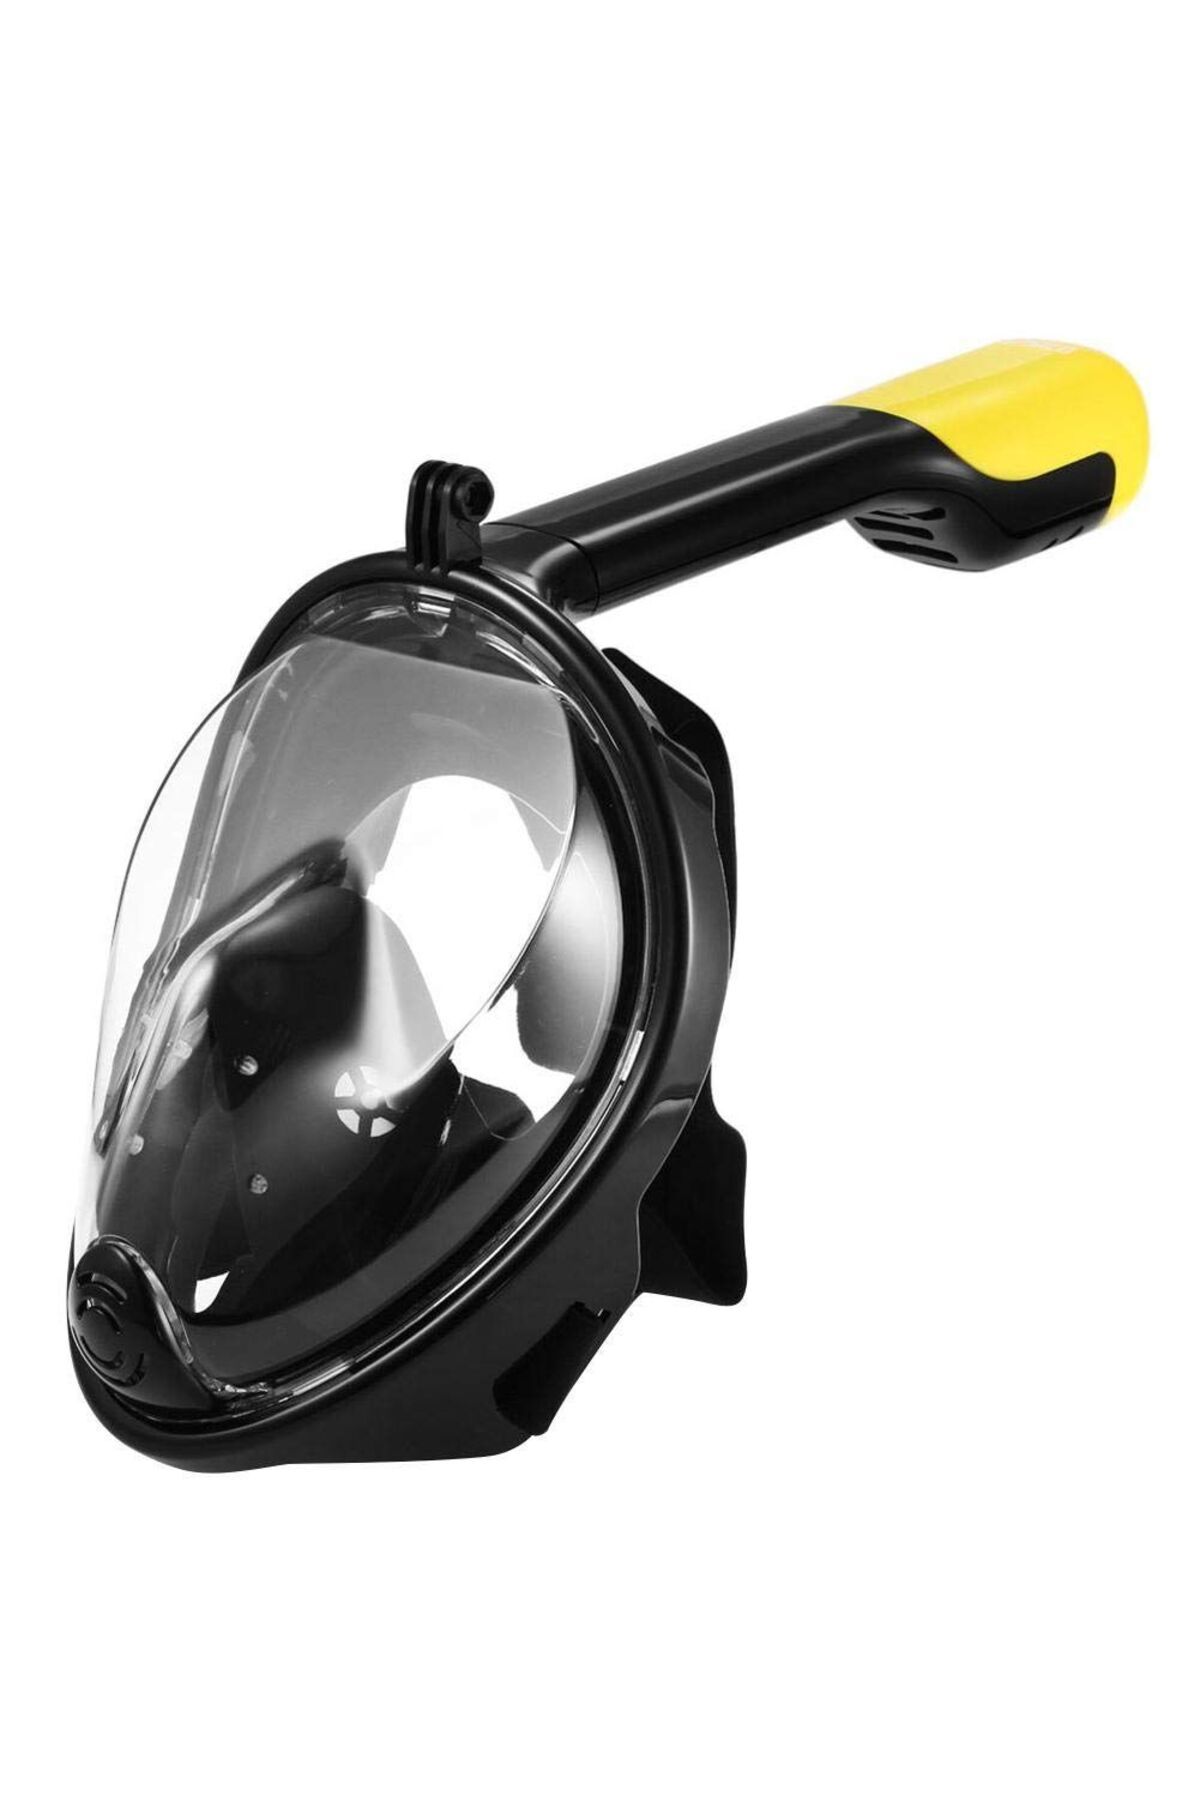 ACSMarket Full Face Şnorkel Dalış Maske Tam Yüz Anti-Sis ve Sızıntı L/XL